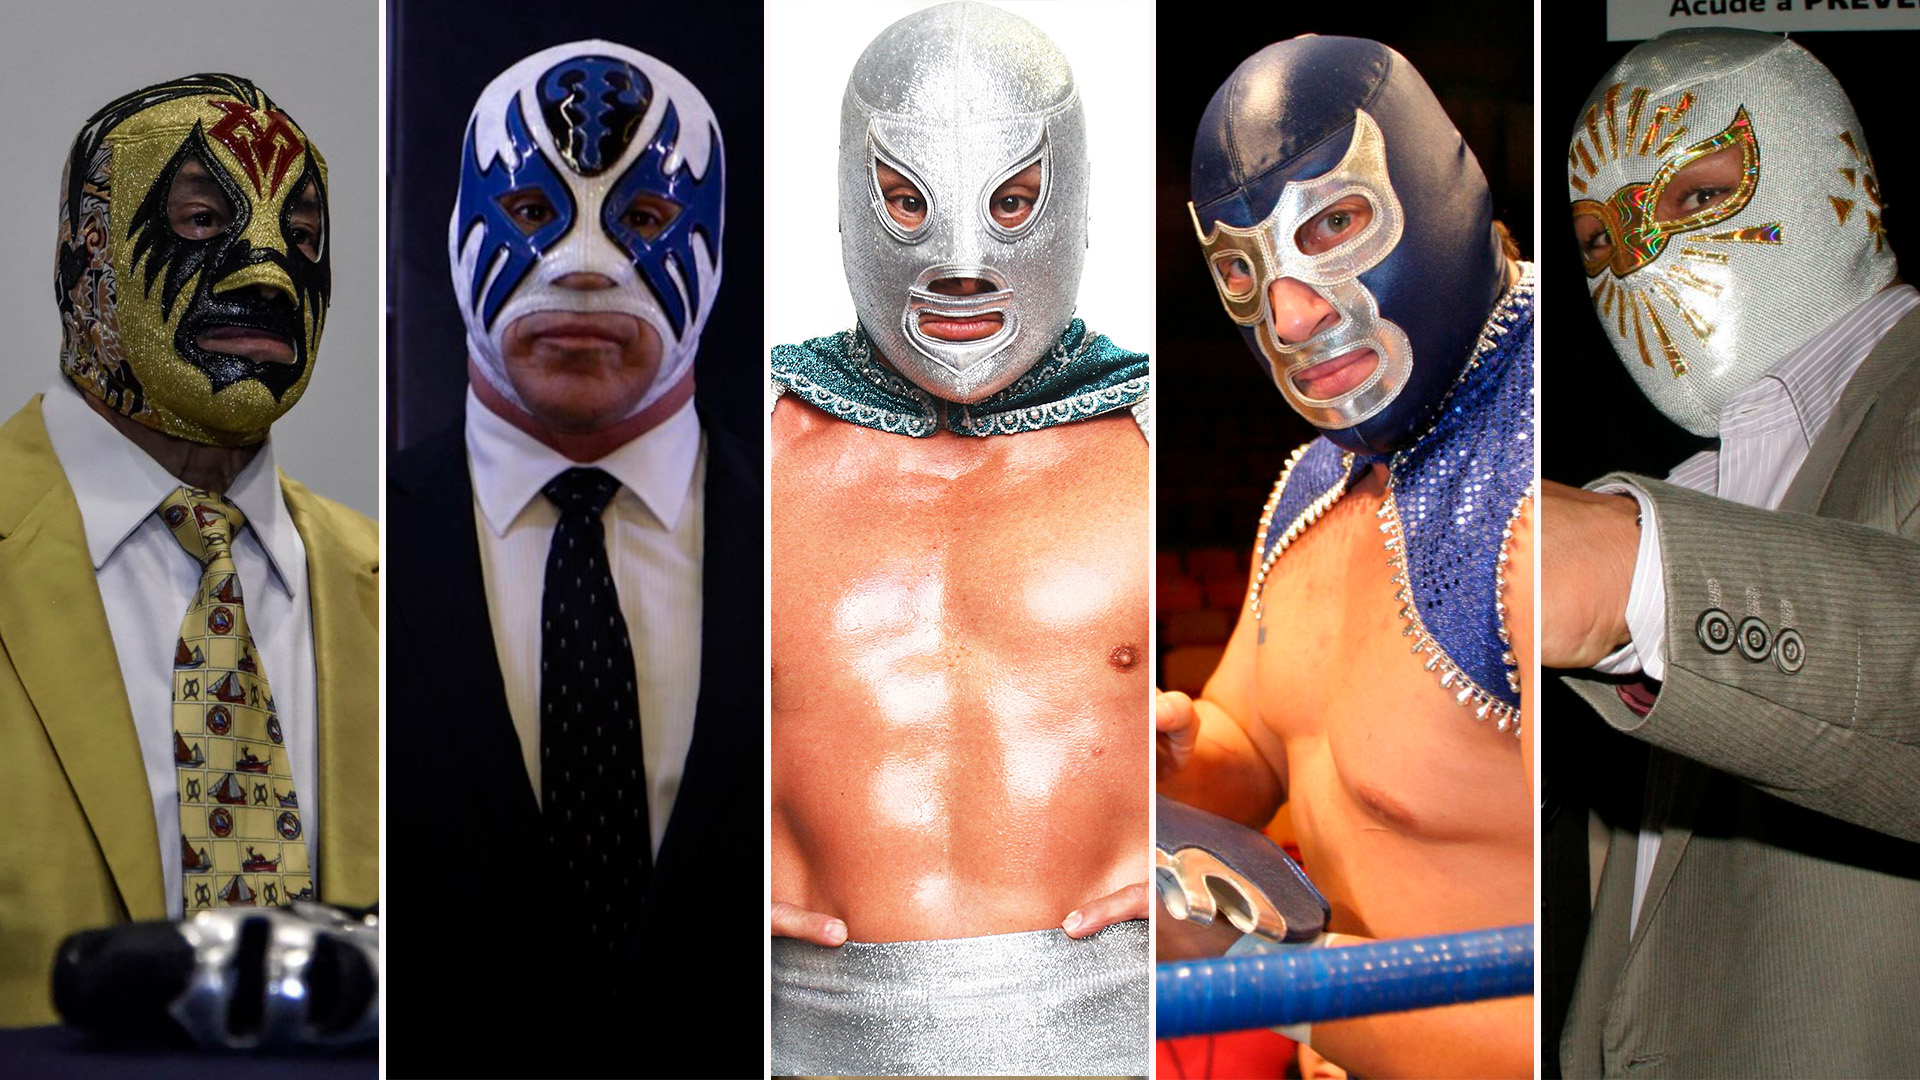 Del Santo a Místico: los cinco enmascarados históricos de la lucha libre en México